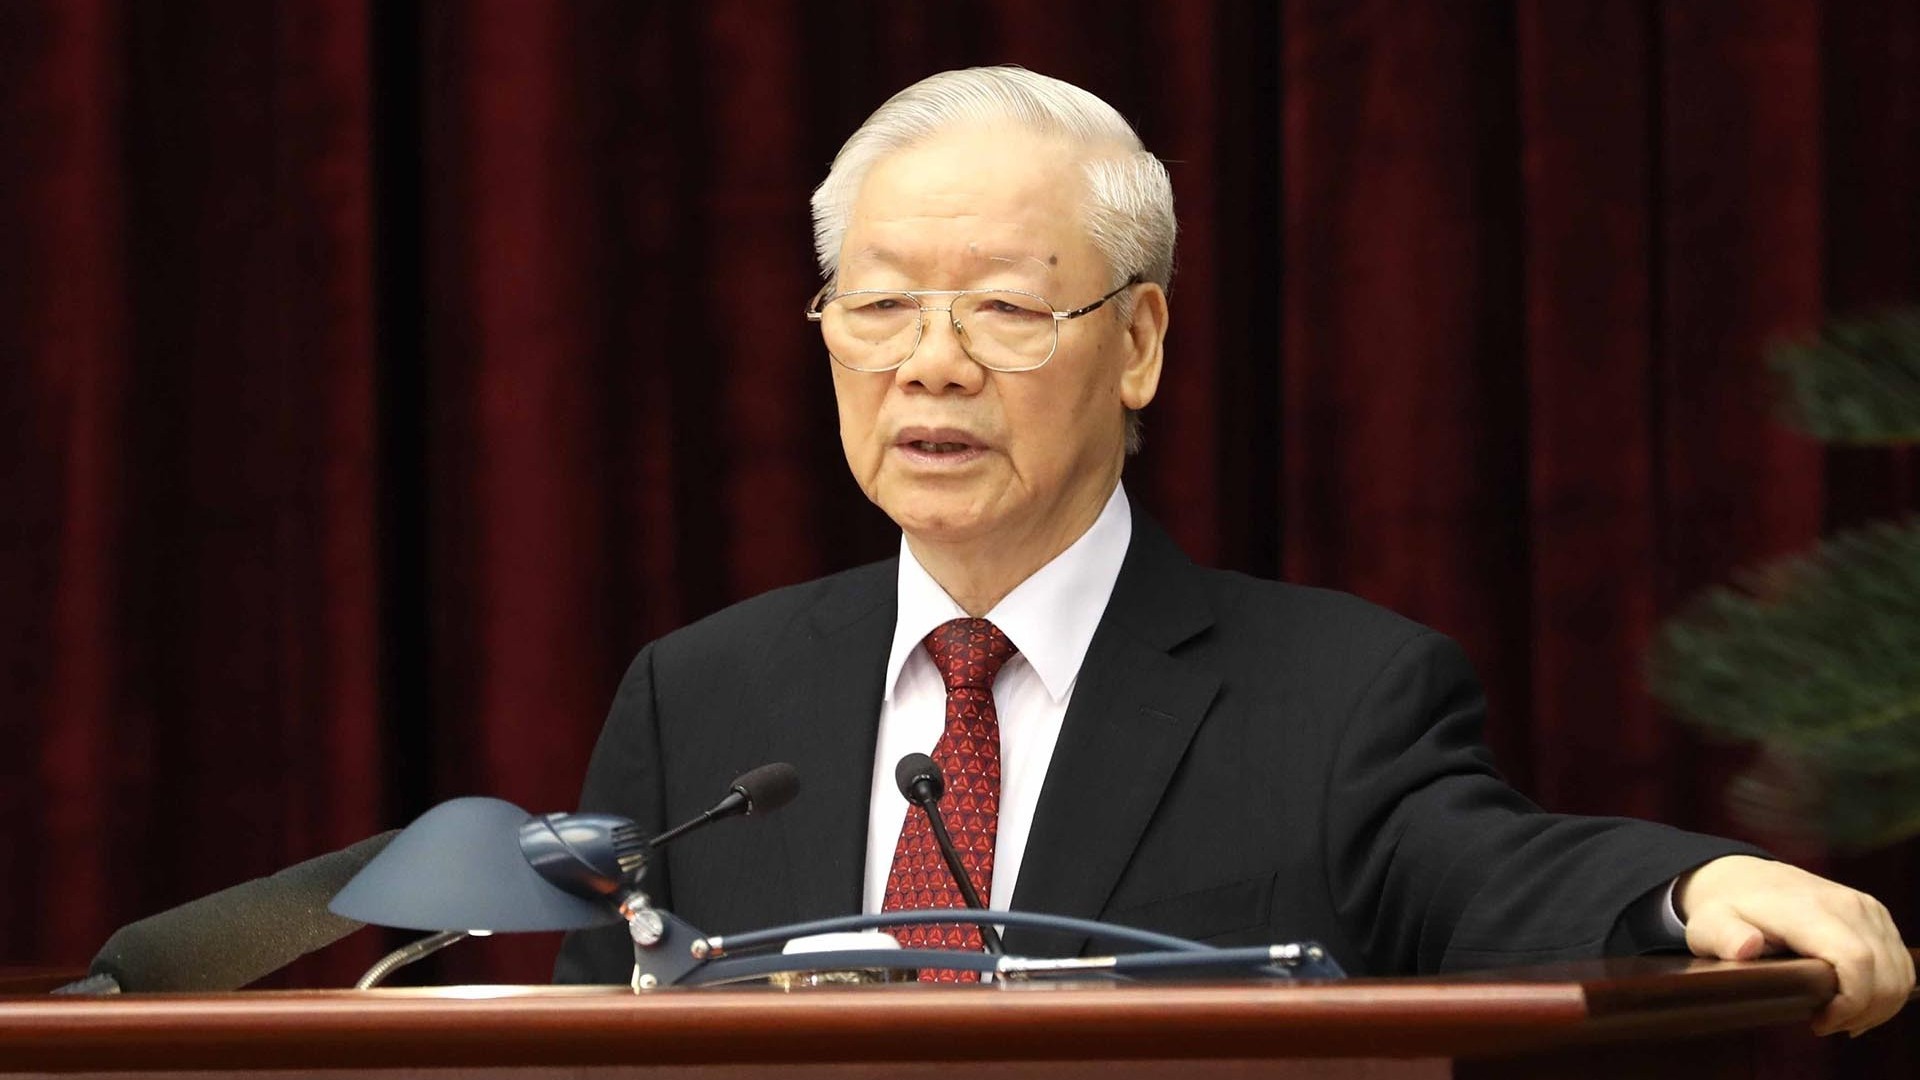 Phát biểu của Tổng Bí thư Nguyễn Phú Trọng tổng kết Hội nghị giữa nhiệm kỳ Ban Chấp hành Trung ương Đảng khóa XIII